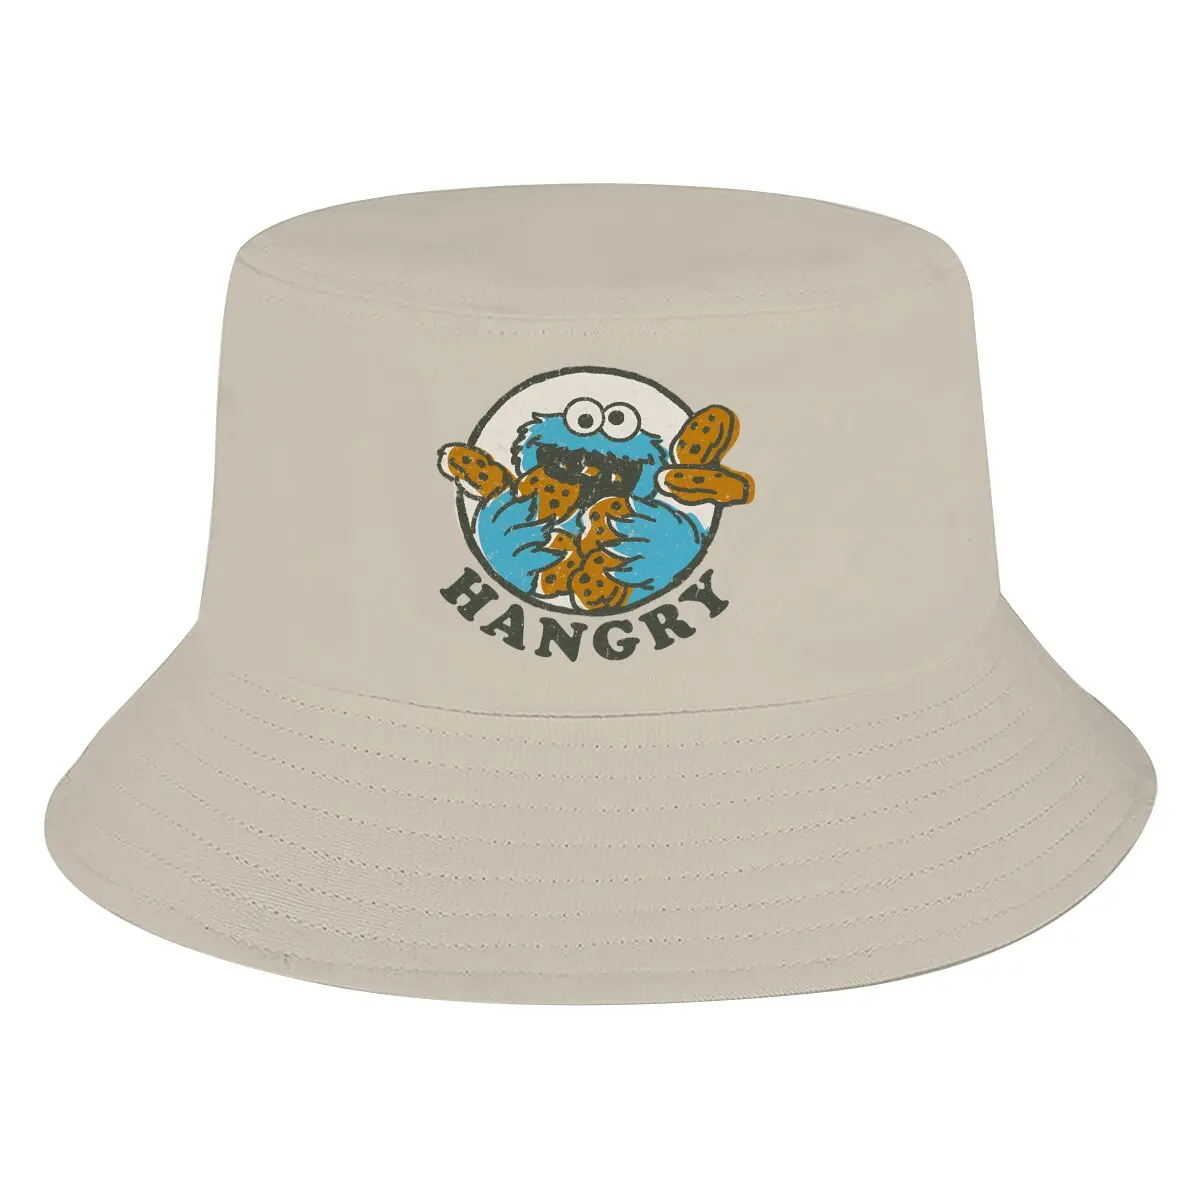 

Sesame Street Bucket Hat Vintage Cookie Monster Hangry Men's Women's Fisherman Cap Hip Hop Beach Sun Fishing Hats